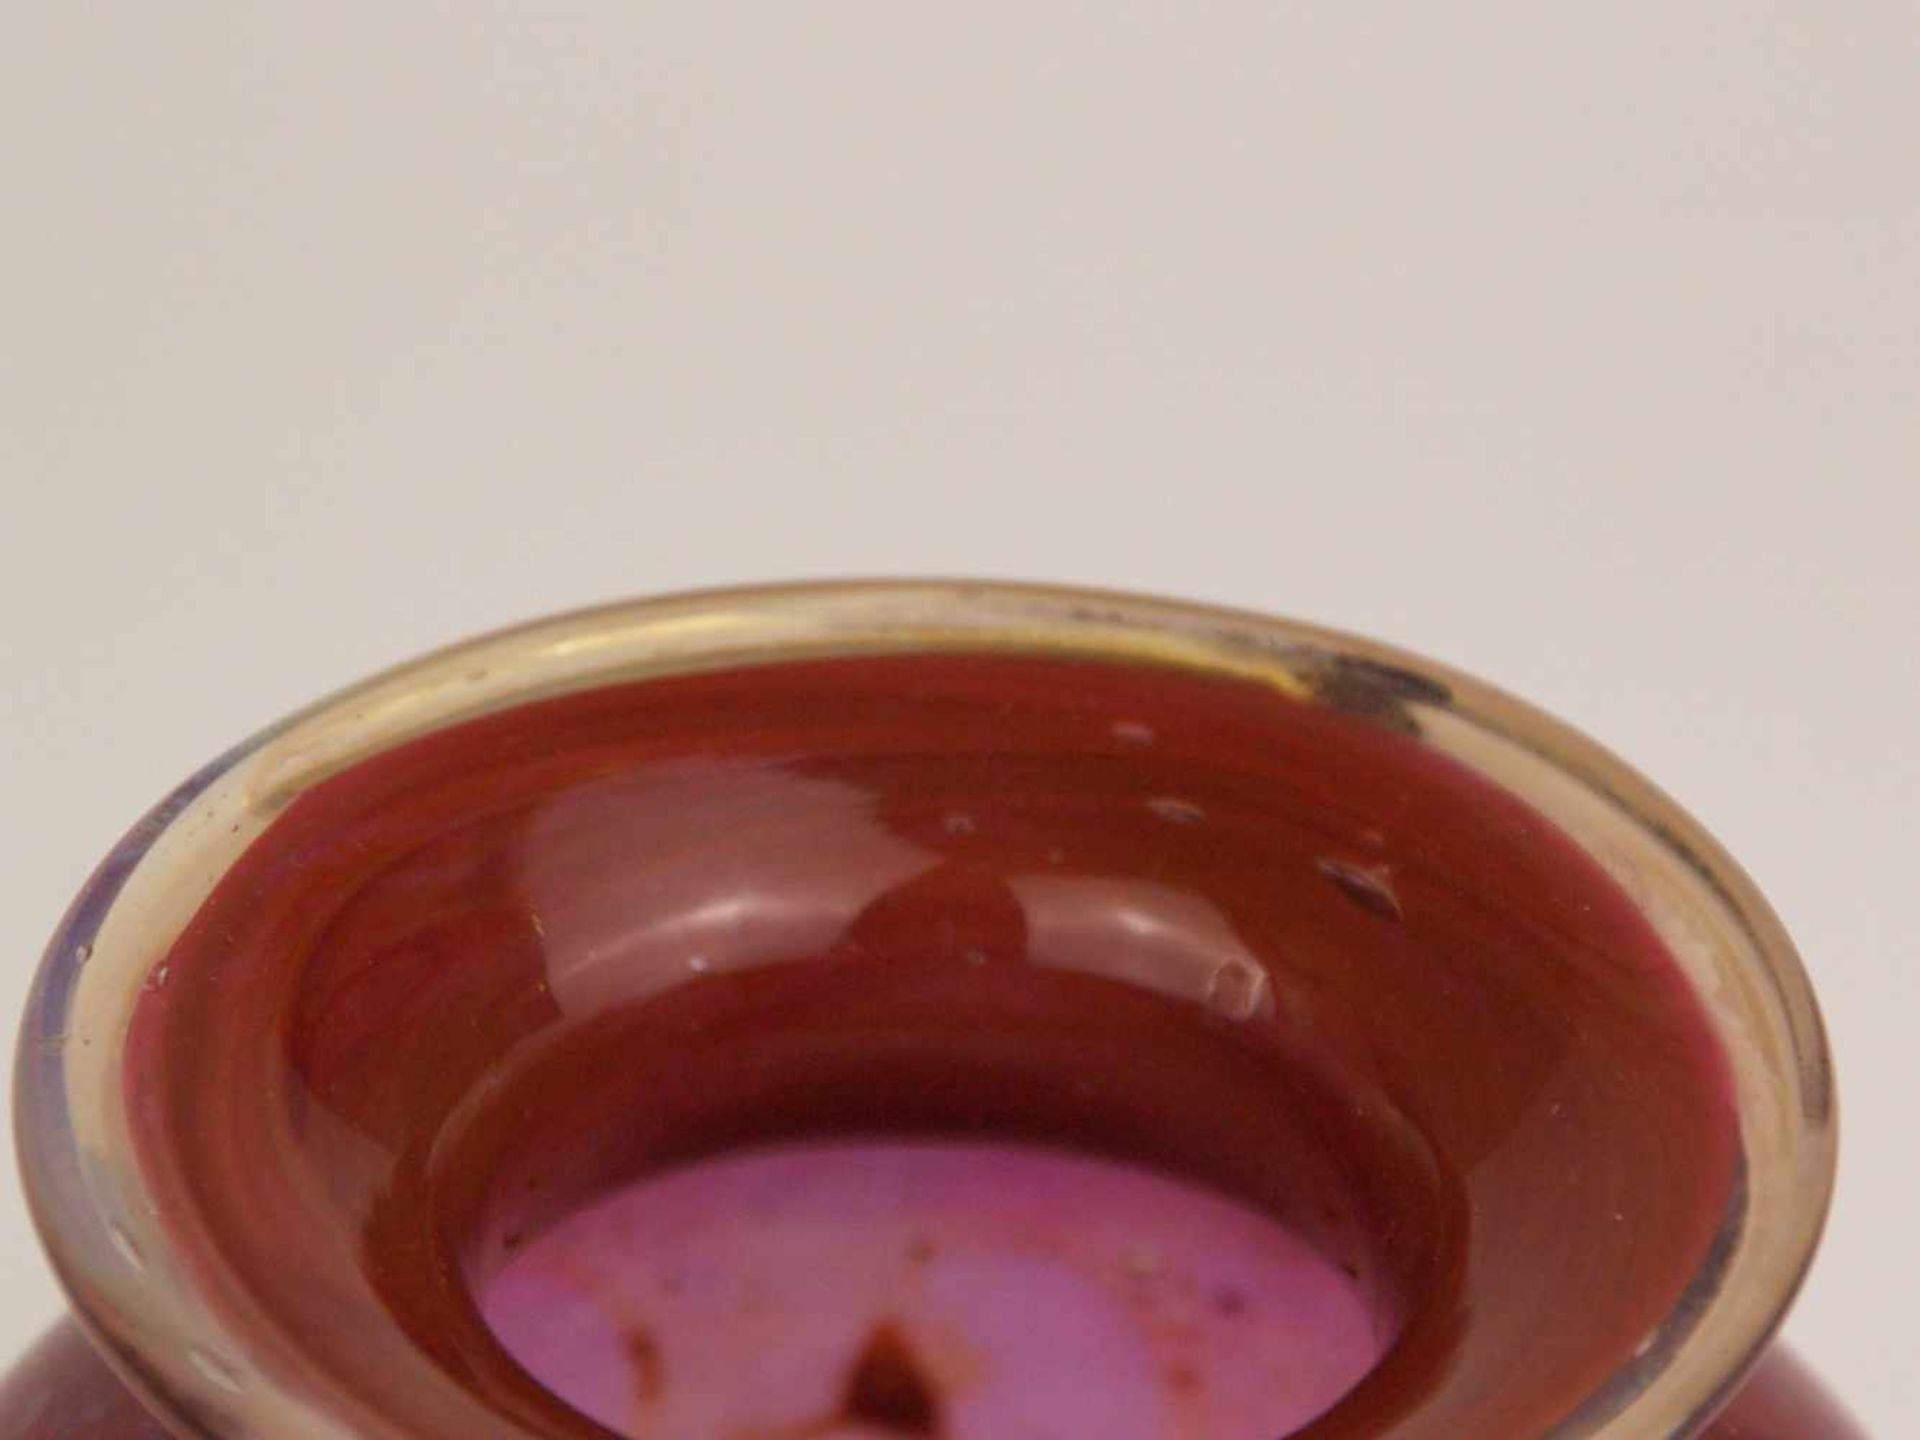 Vase - Klarglas, rosa unterfangen, eingeschmolzene goldfarbene Luftblasen, gedrückte Kugelform, - Bild 2 aus 5